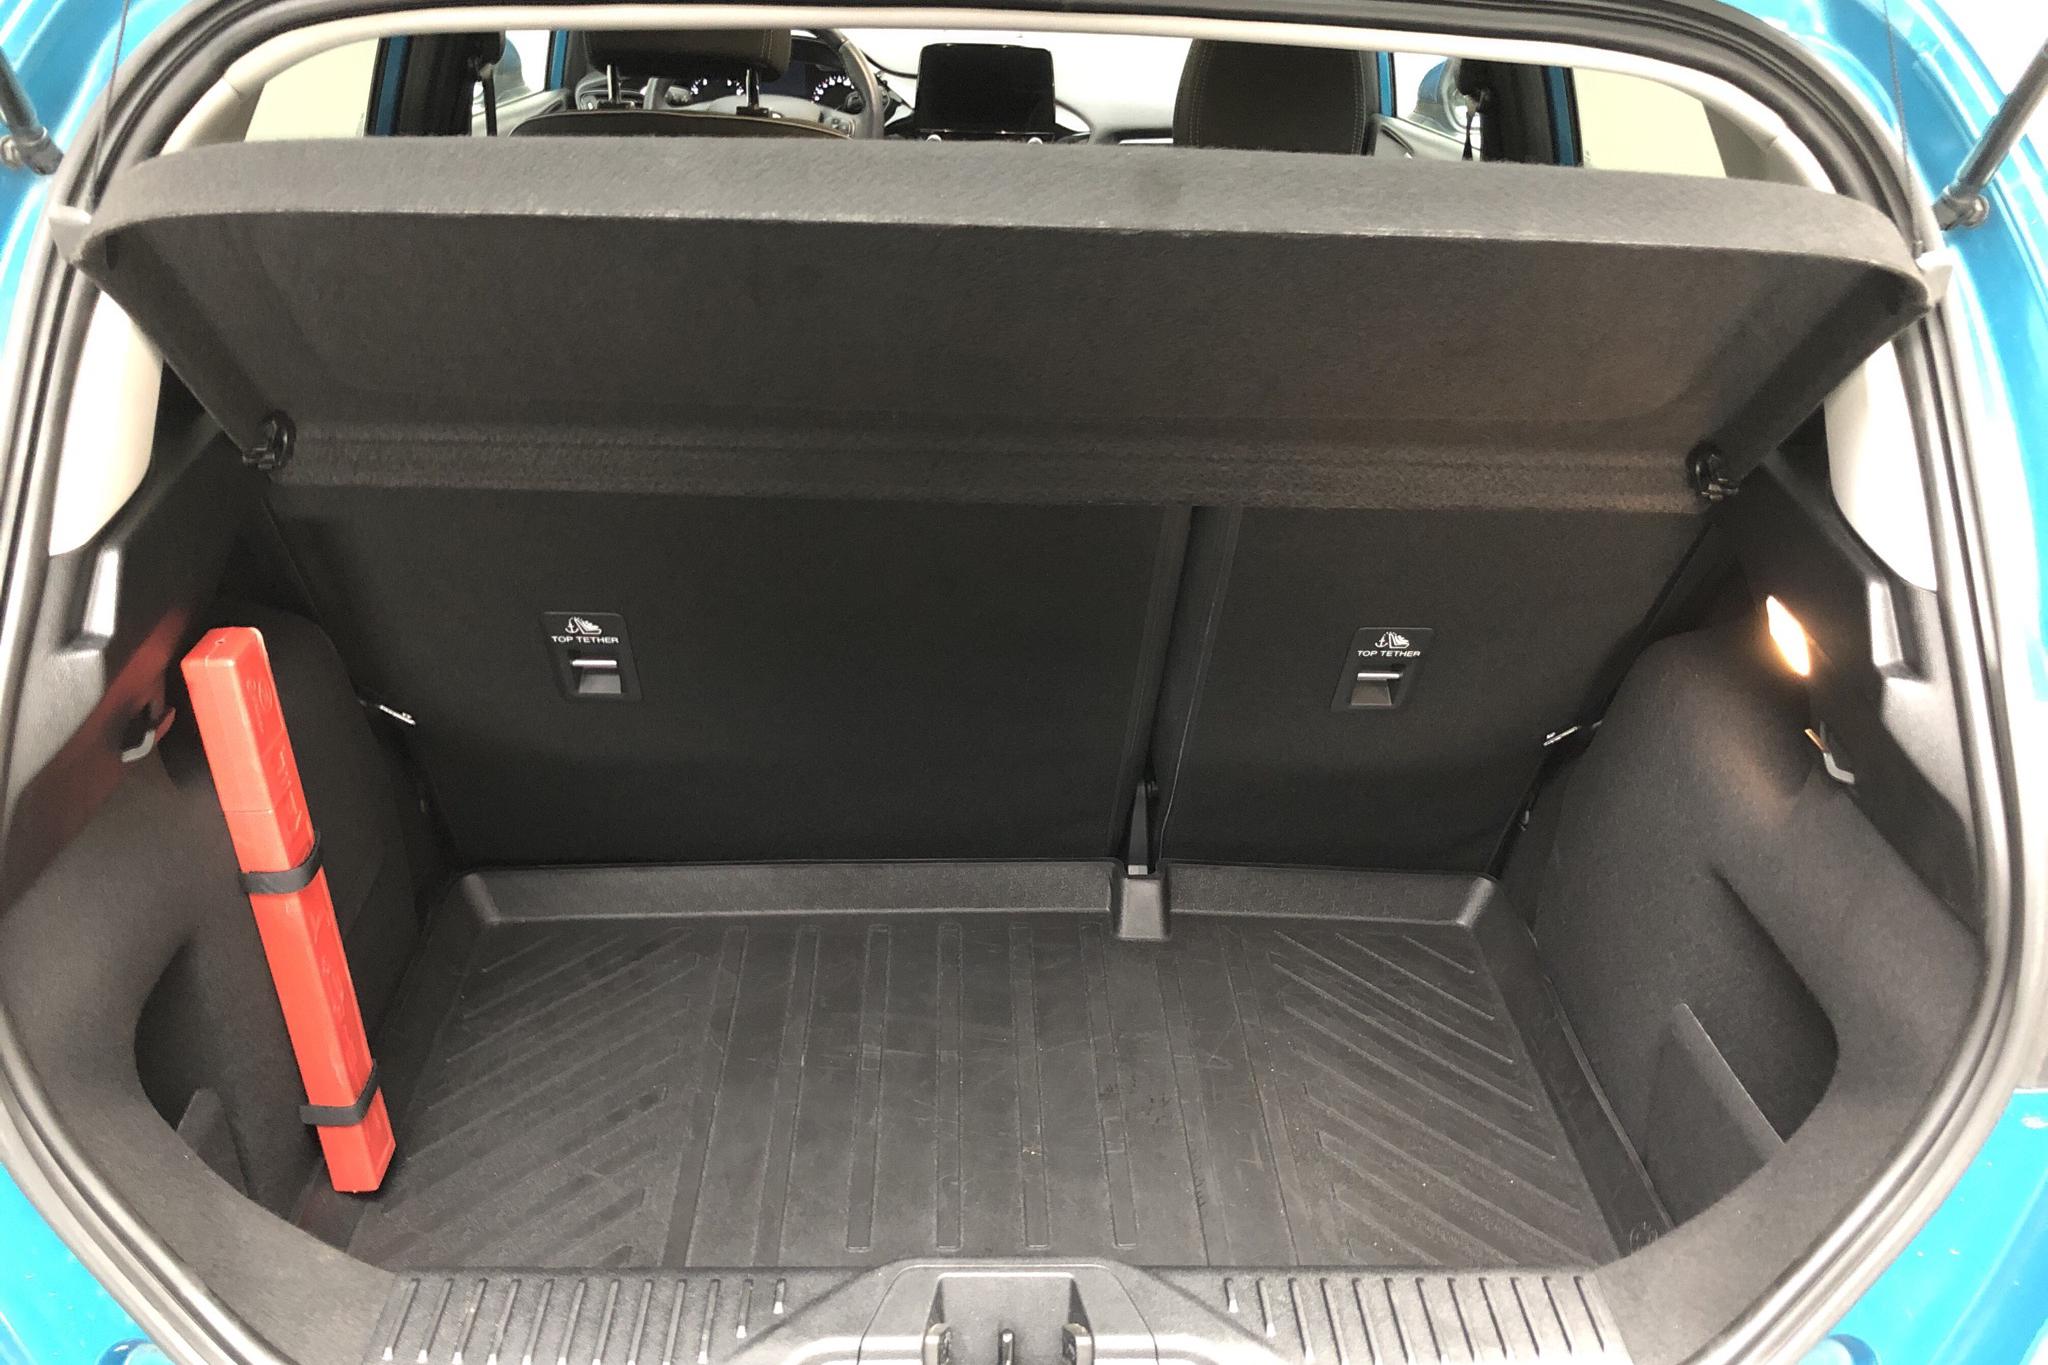 Ford Fiesta 1.0T EcoBoost 5dr (100hk) - 3 017 mil - Manuell - blå - 2018